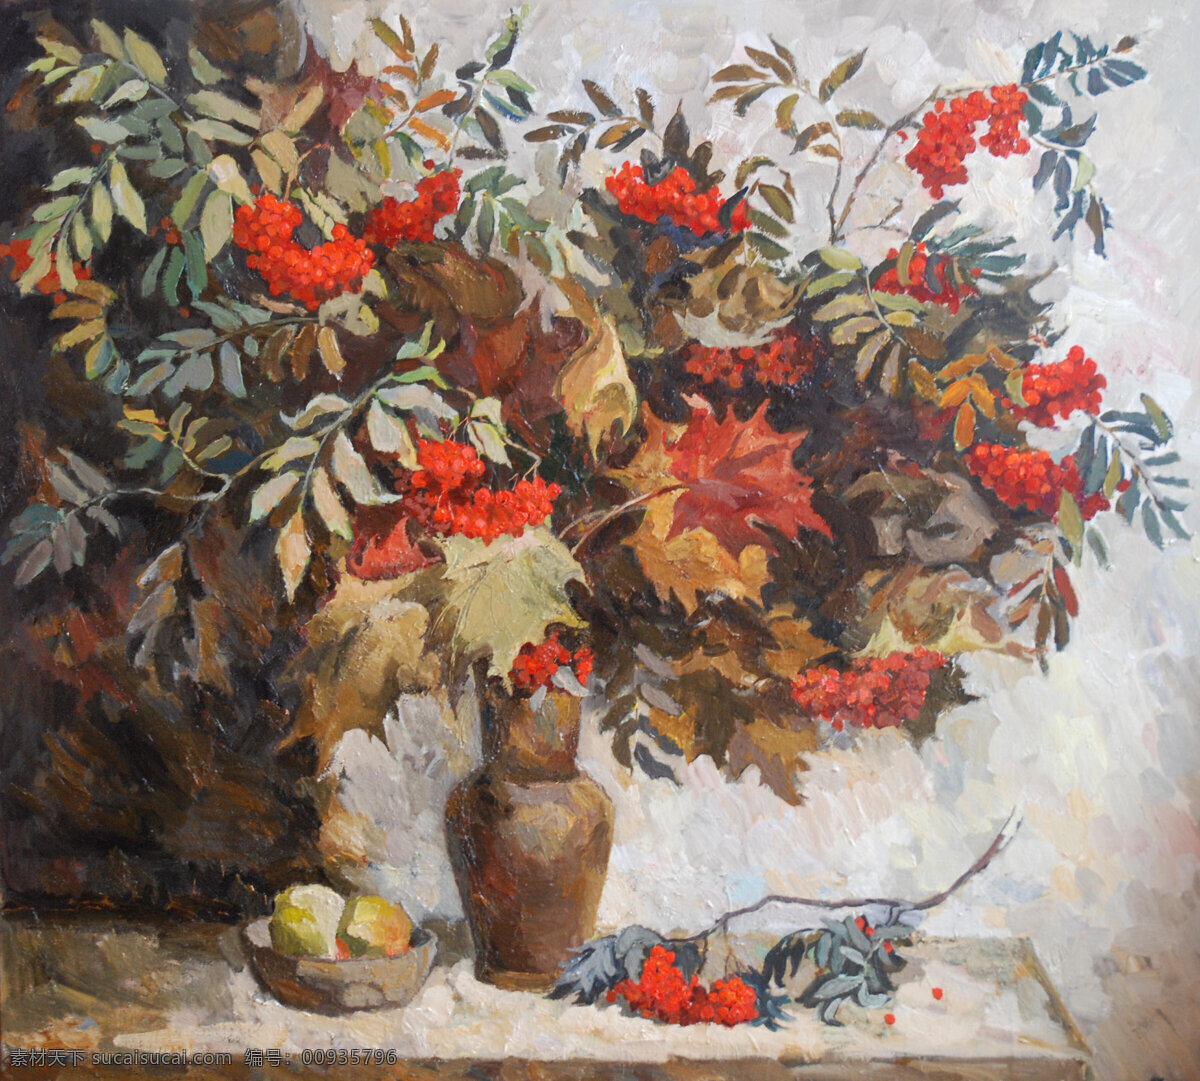 国外 红色 花卉 花卉模板下载 花卉设计素材 花瓶 画框 绘画 绘画书法 油画 植物 叶子 静物 写生 文化艺术